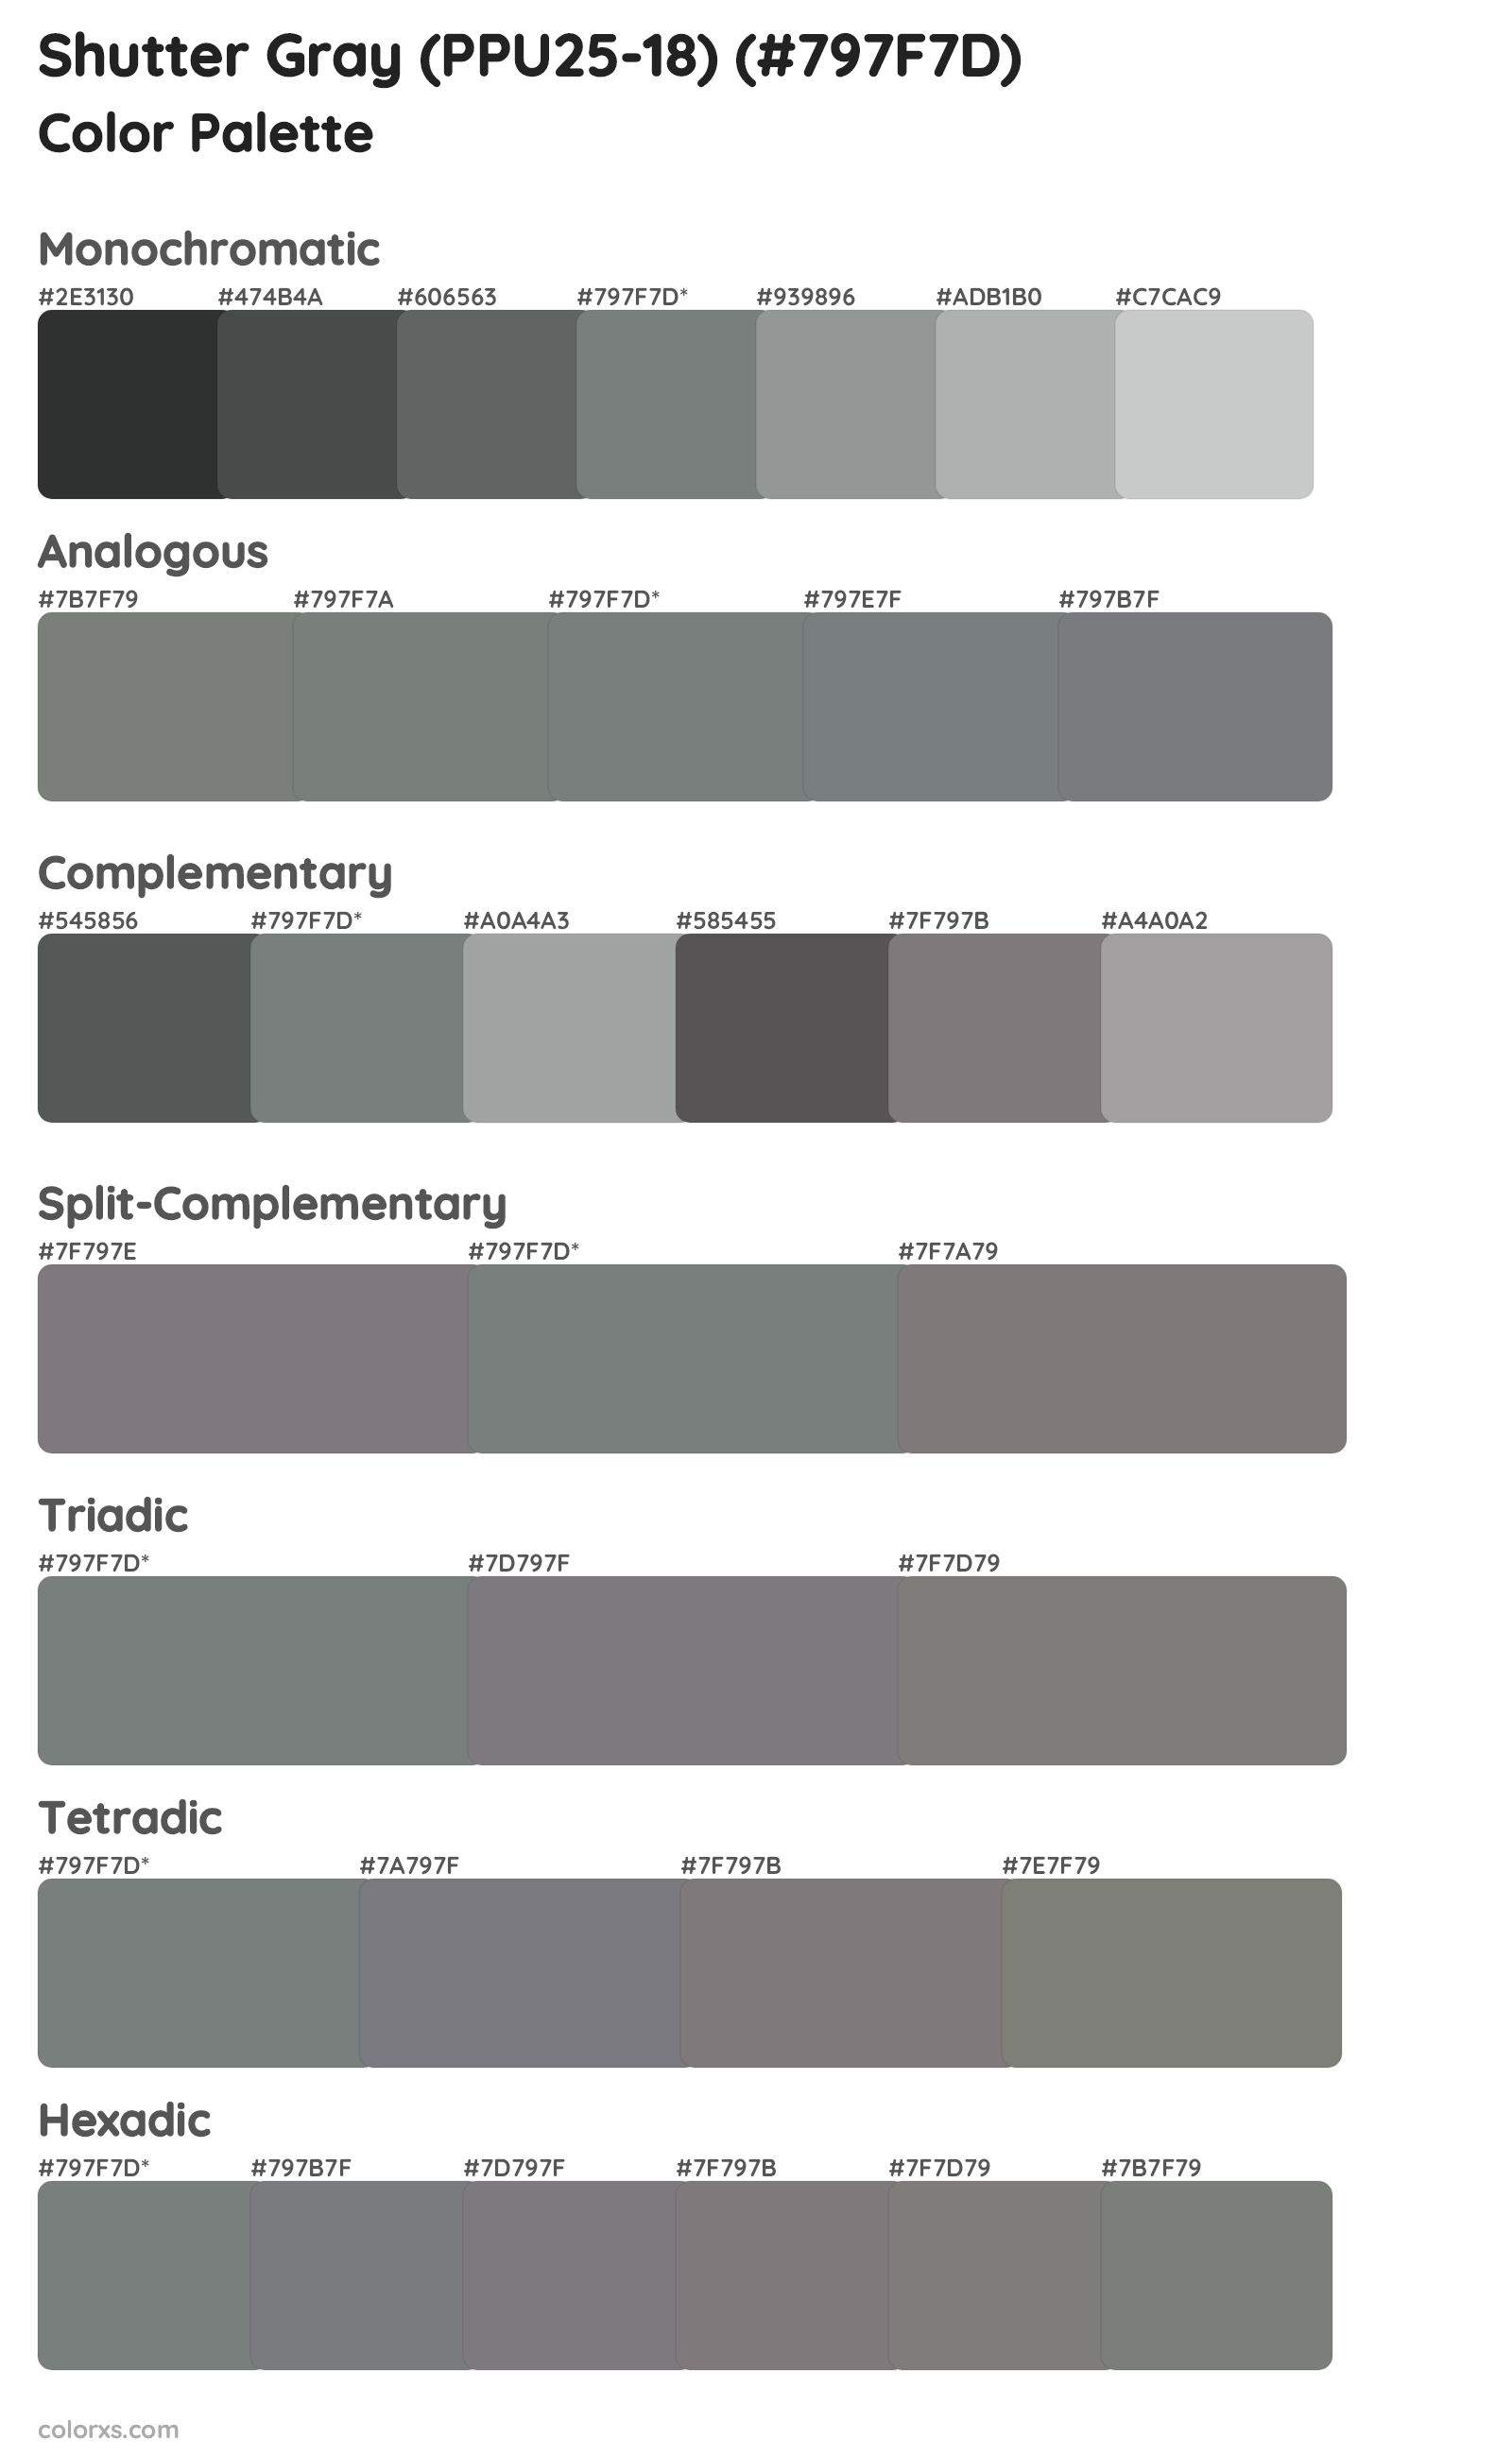 Shutter Gray (PPU25-18) Color Scheme Palettes